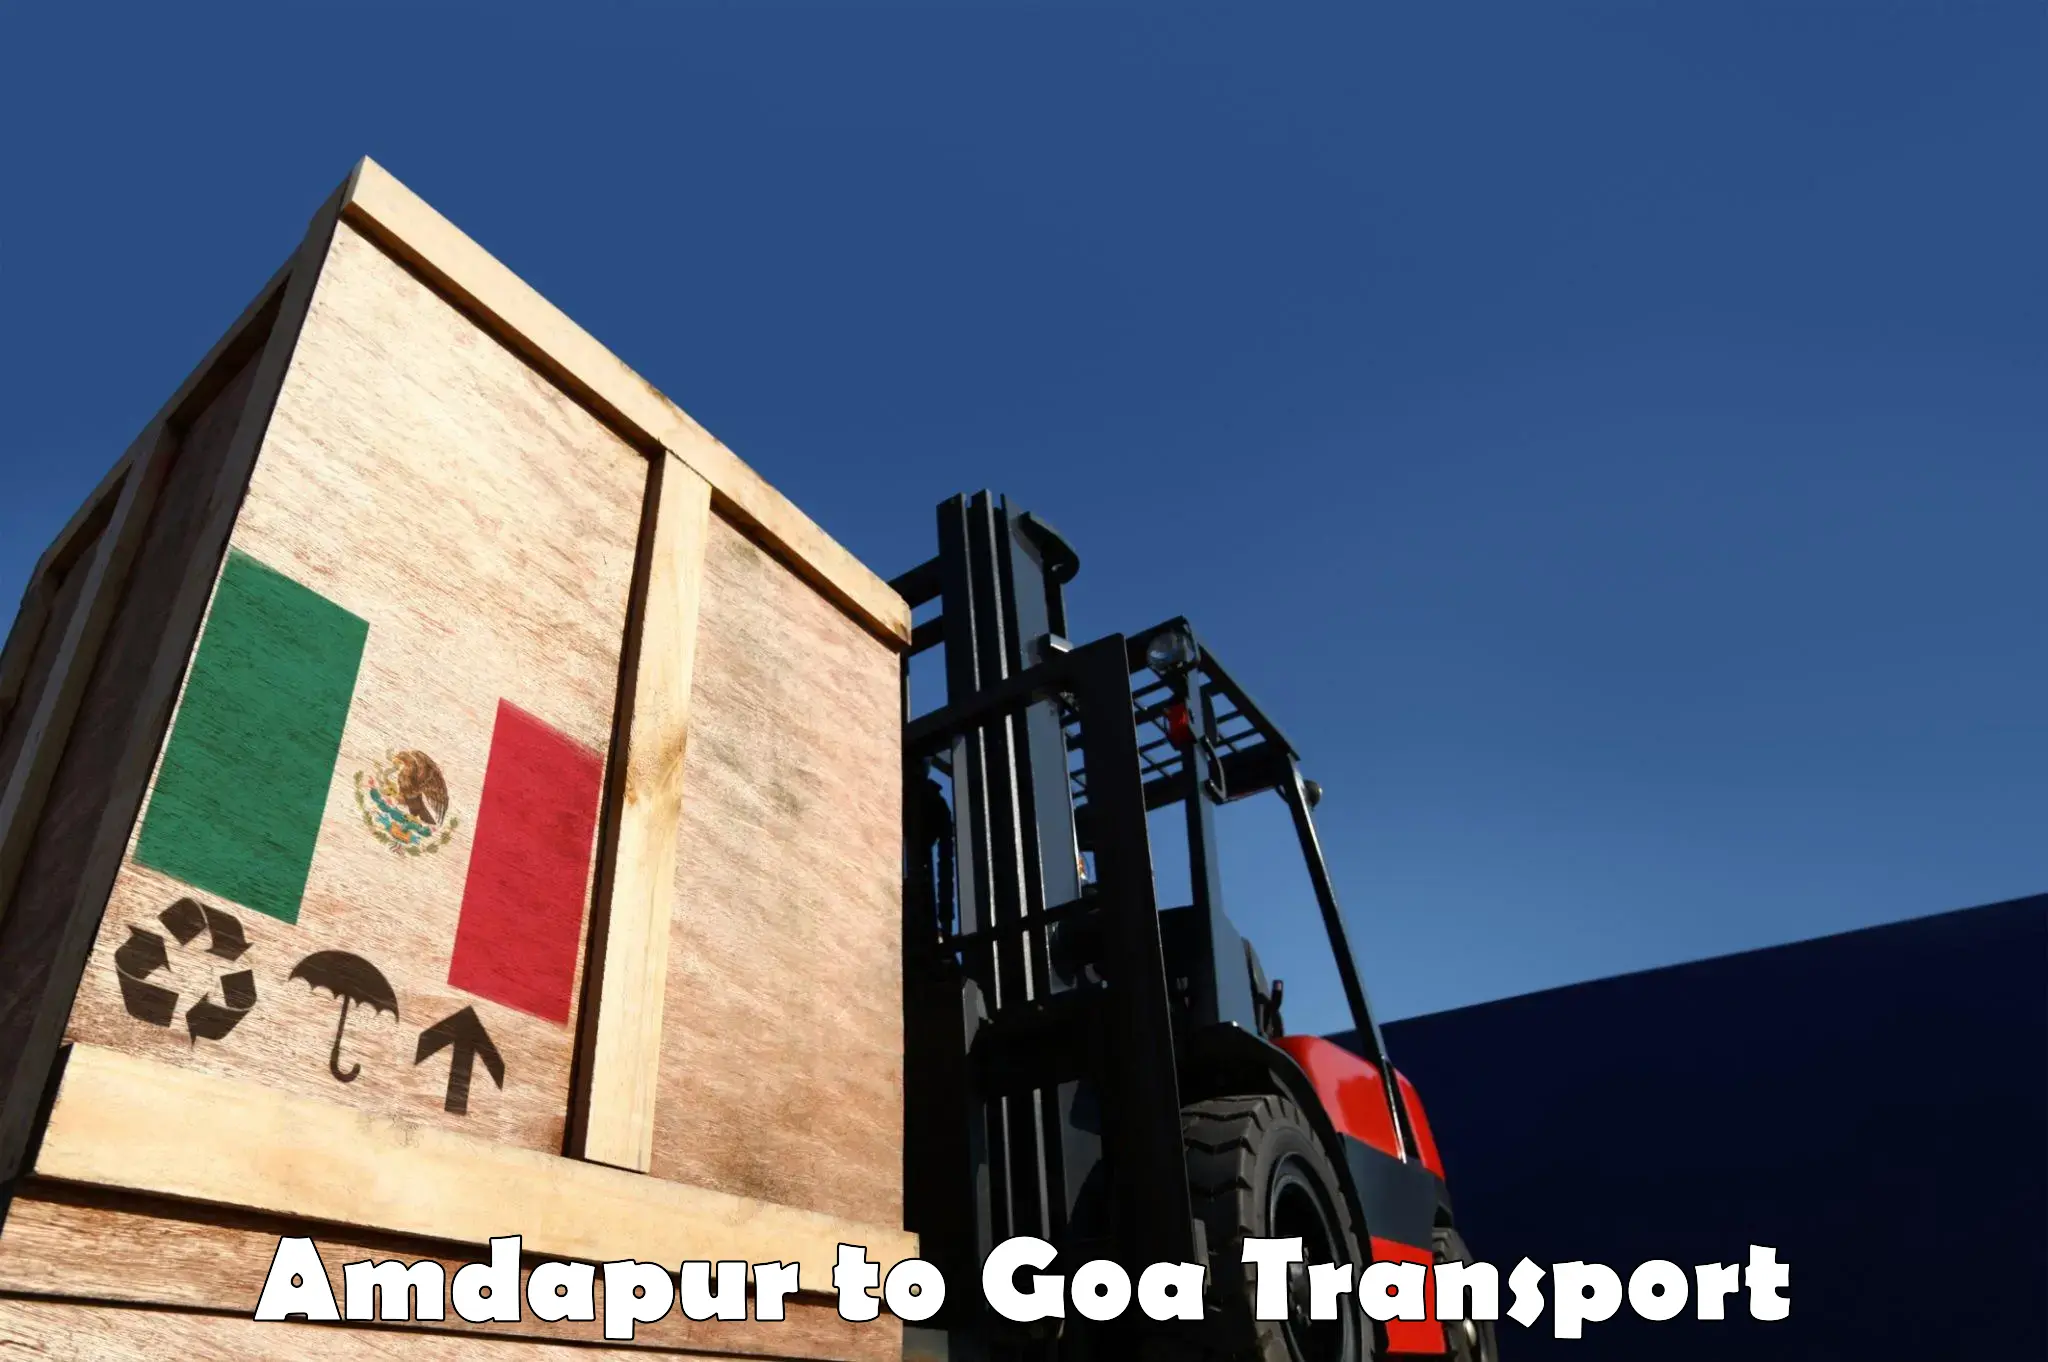 Daily transport service Amdapur to Mormugao Port